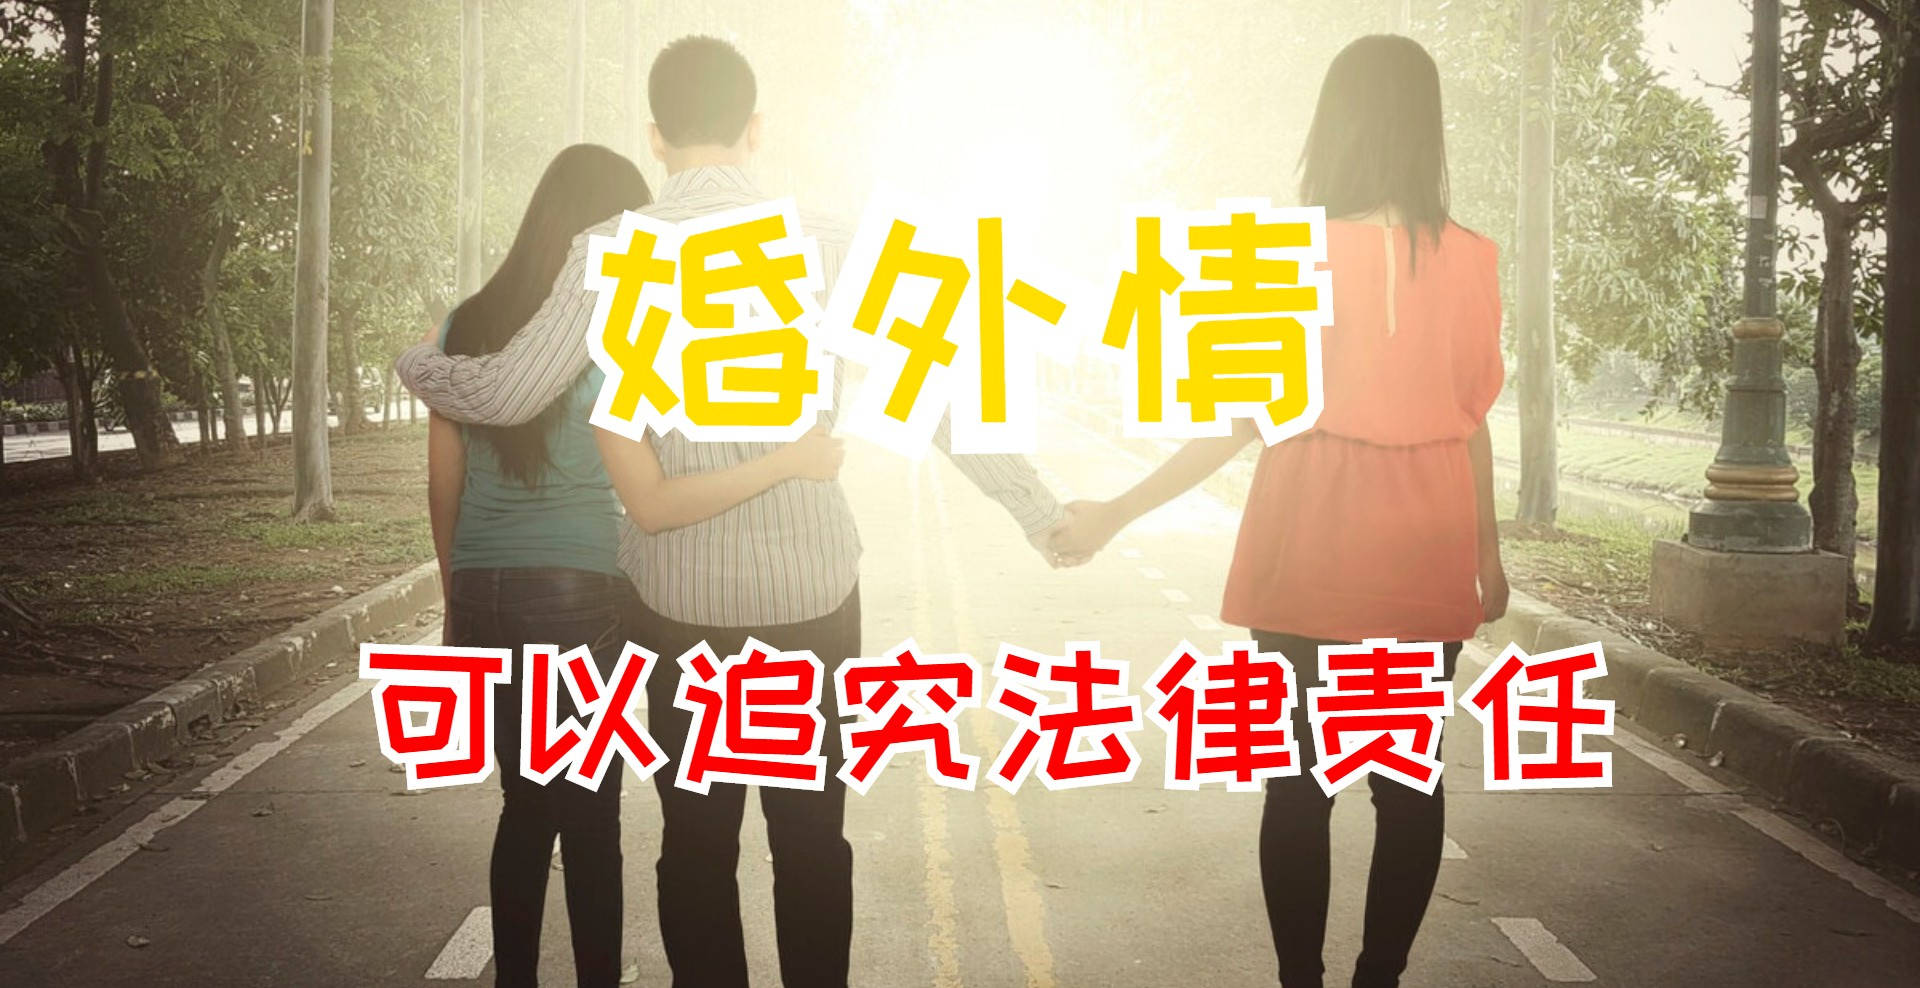 上海私家侦探收费标准 婚外情经济补偿的标准是